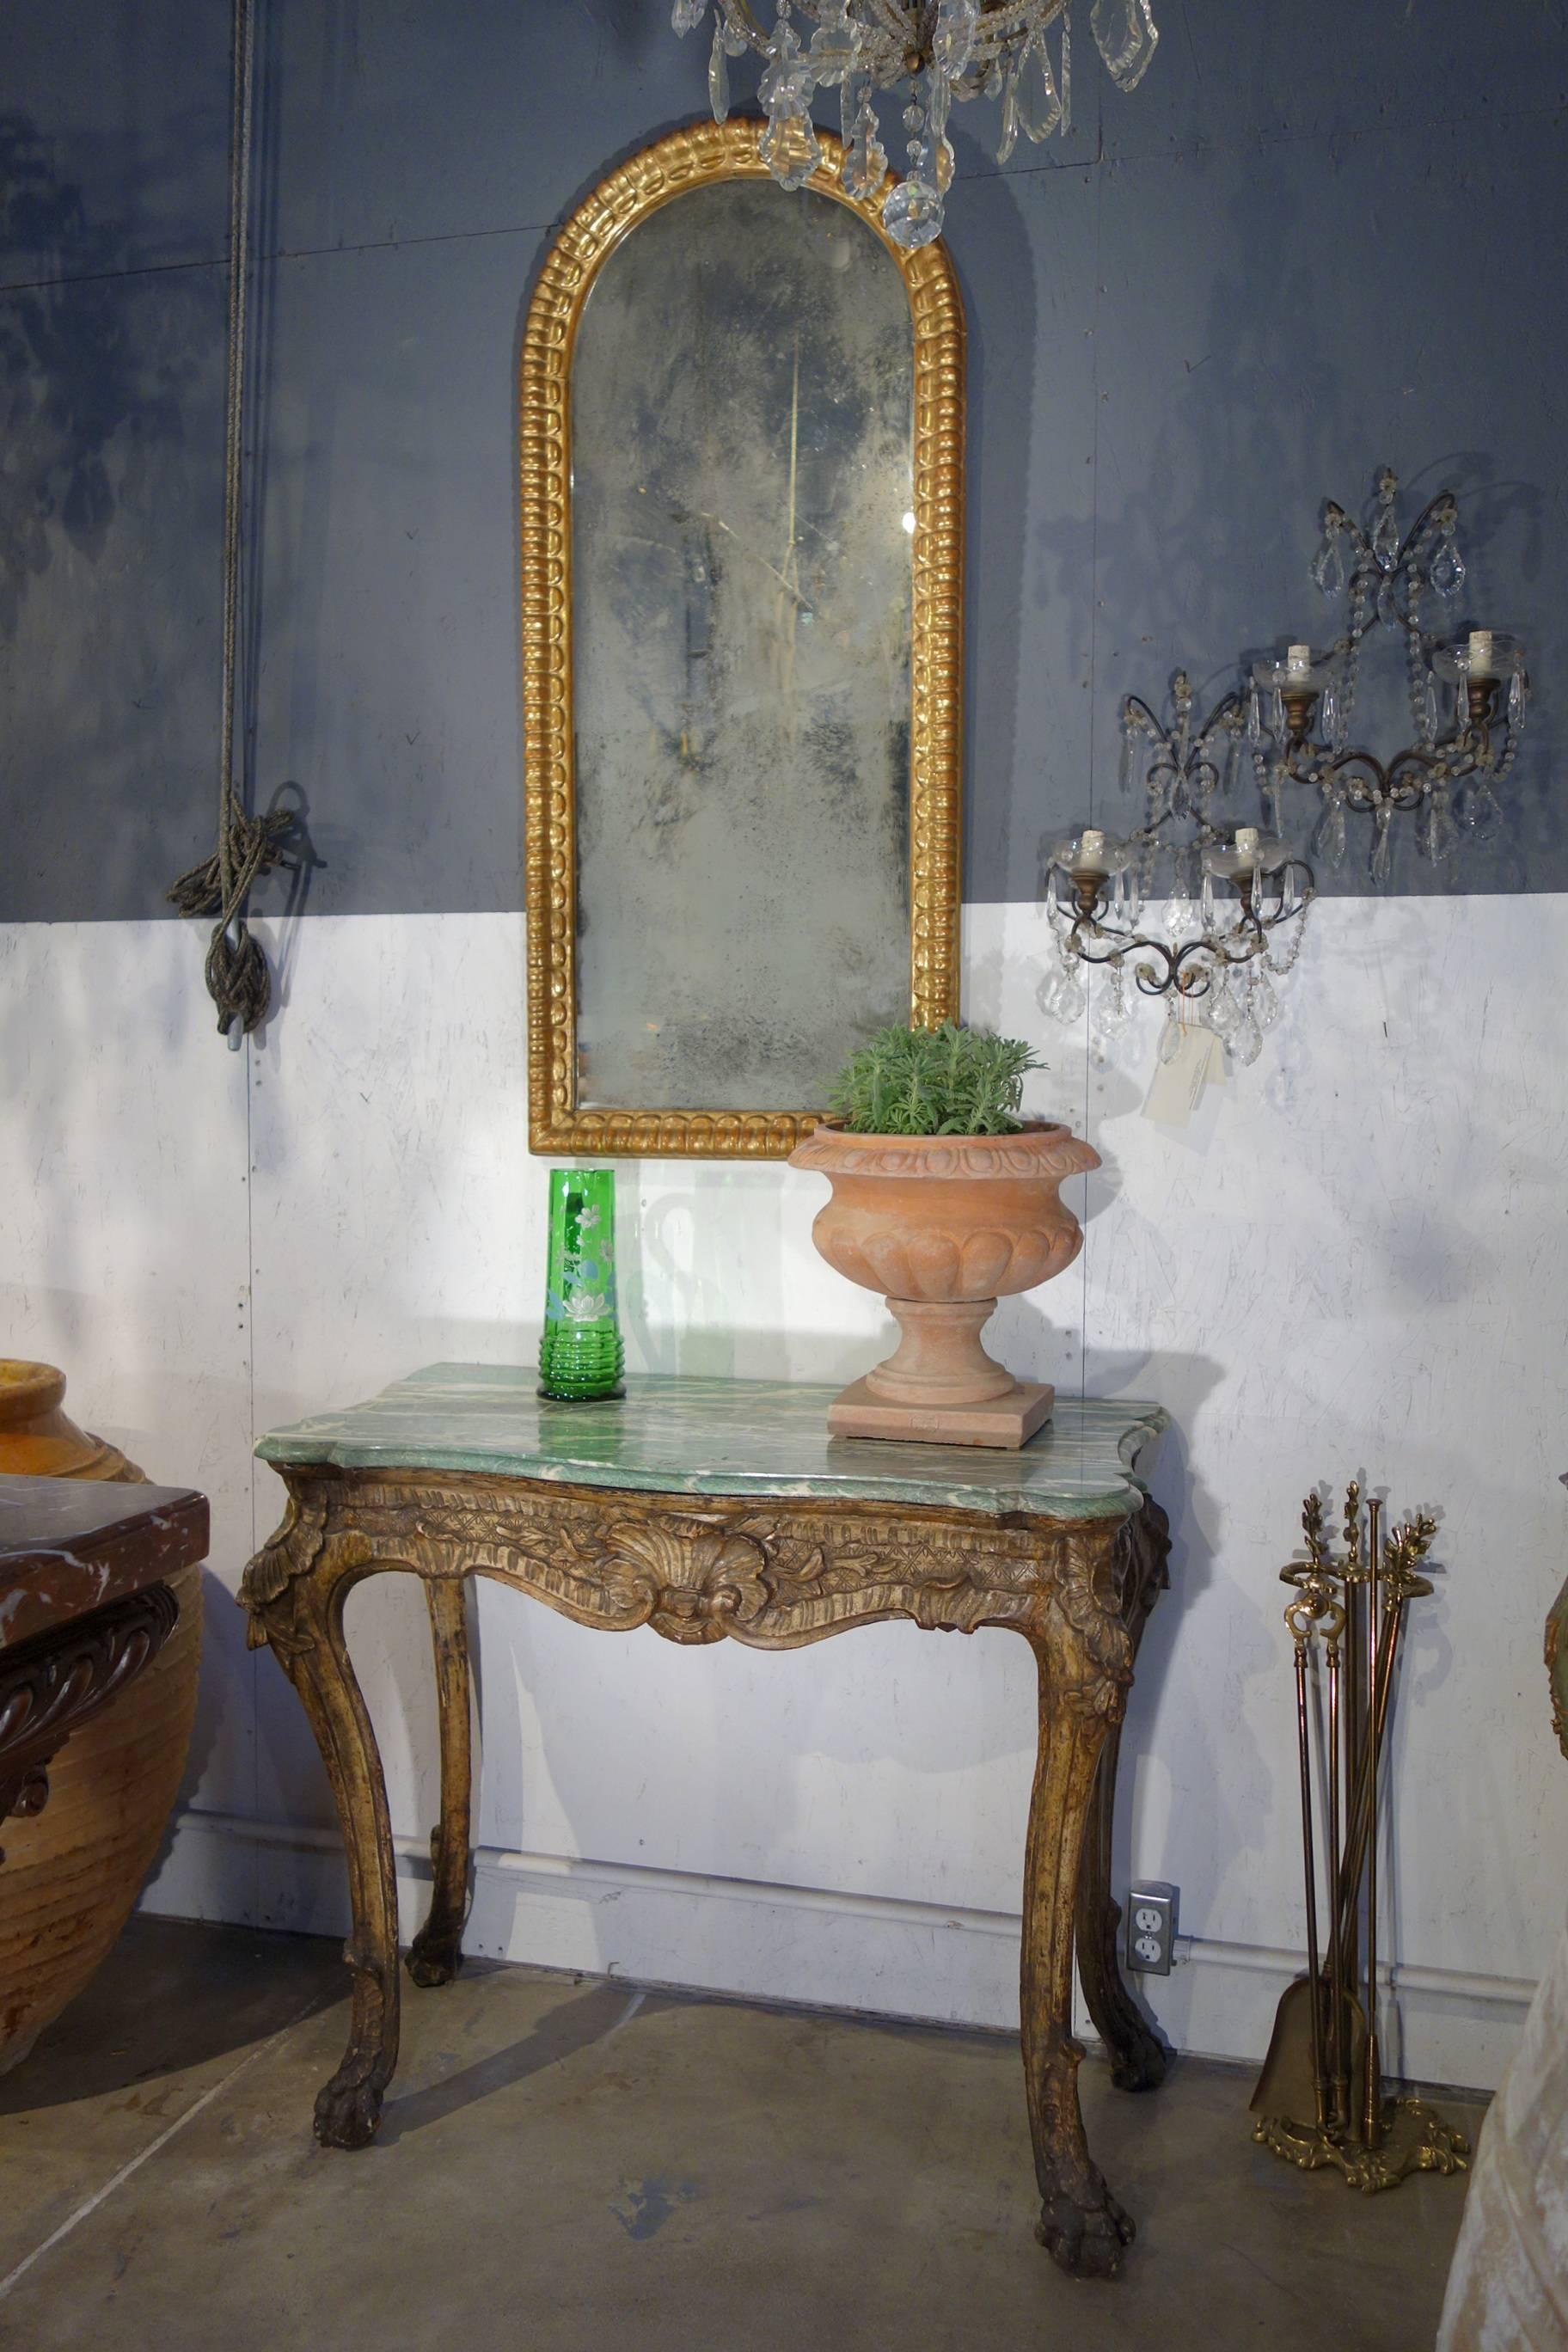 Miroir vertical ovale italien ancien du début du XIXe siècle de style baroque, doré à l'or.
Ravissant miroir ovale en forme de niche doré avec détails sculptés à la main.  procédé de feuille d'or «olo ».  Miroir au mercure d'origine avec une bonne